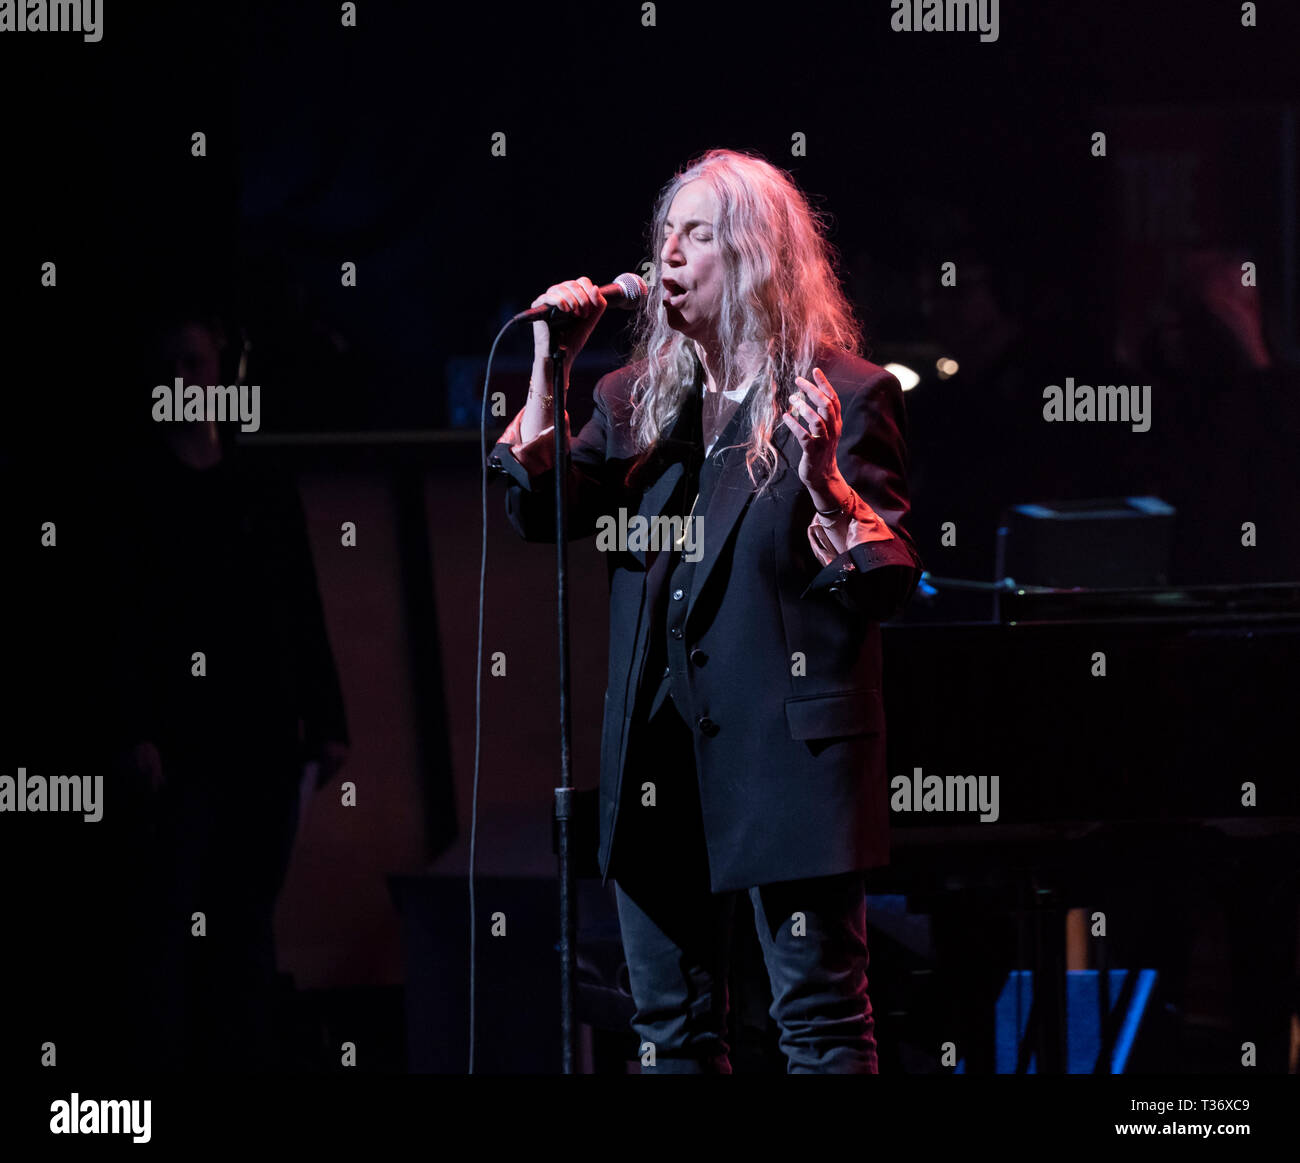 New York, NY - 4 Avril, 2019 : Patti Smith joue sur la scène au cours de Jazz Foundation of America Benefit concert grande nuit de Harlem au Apollo Theatre Banque D'Images